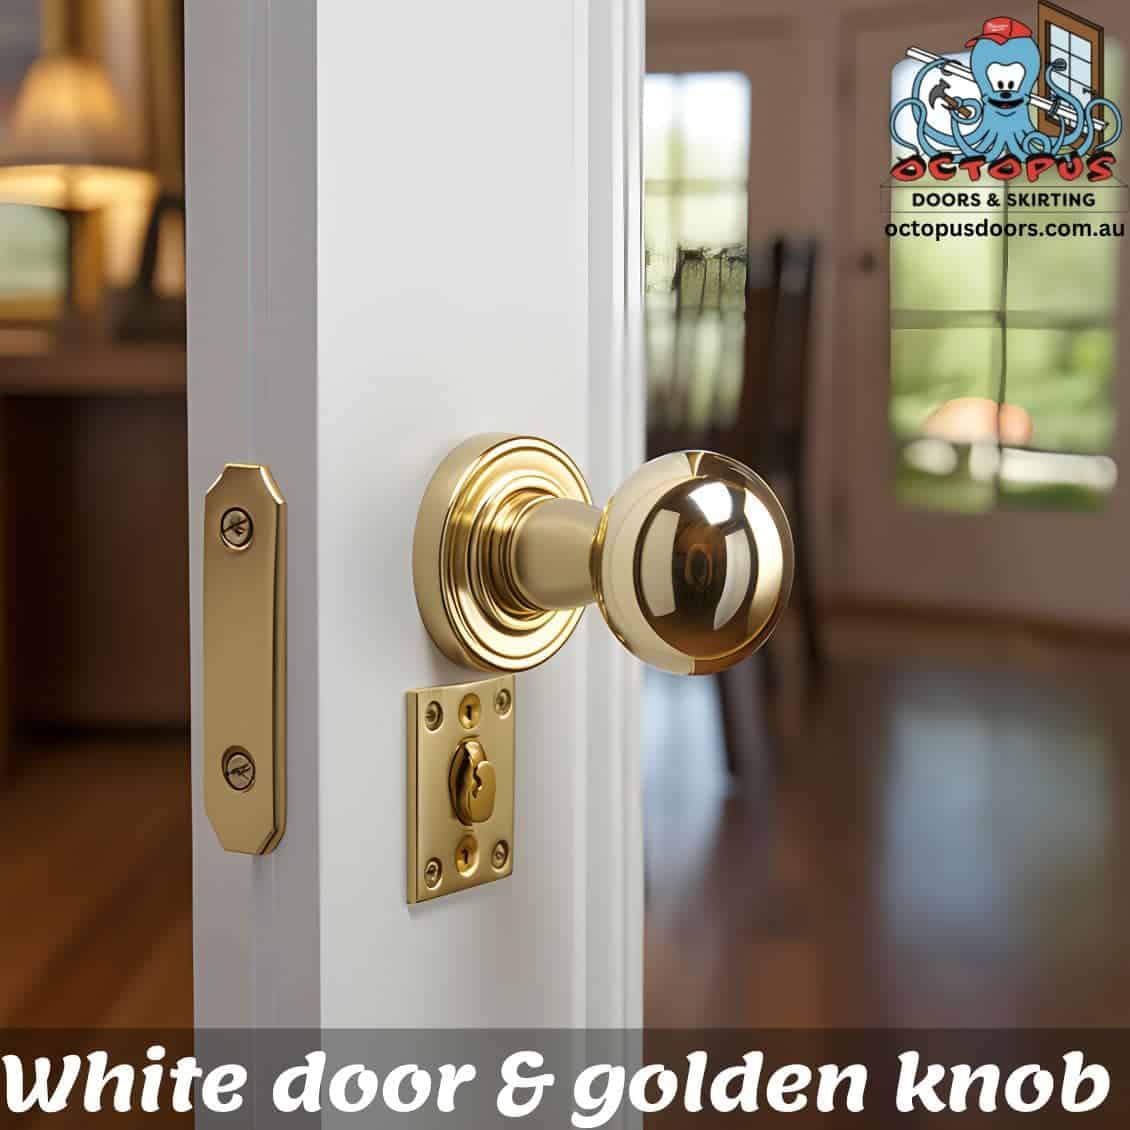 White door & golden knob (1)